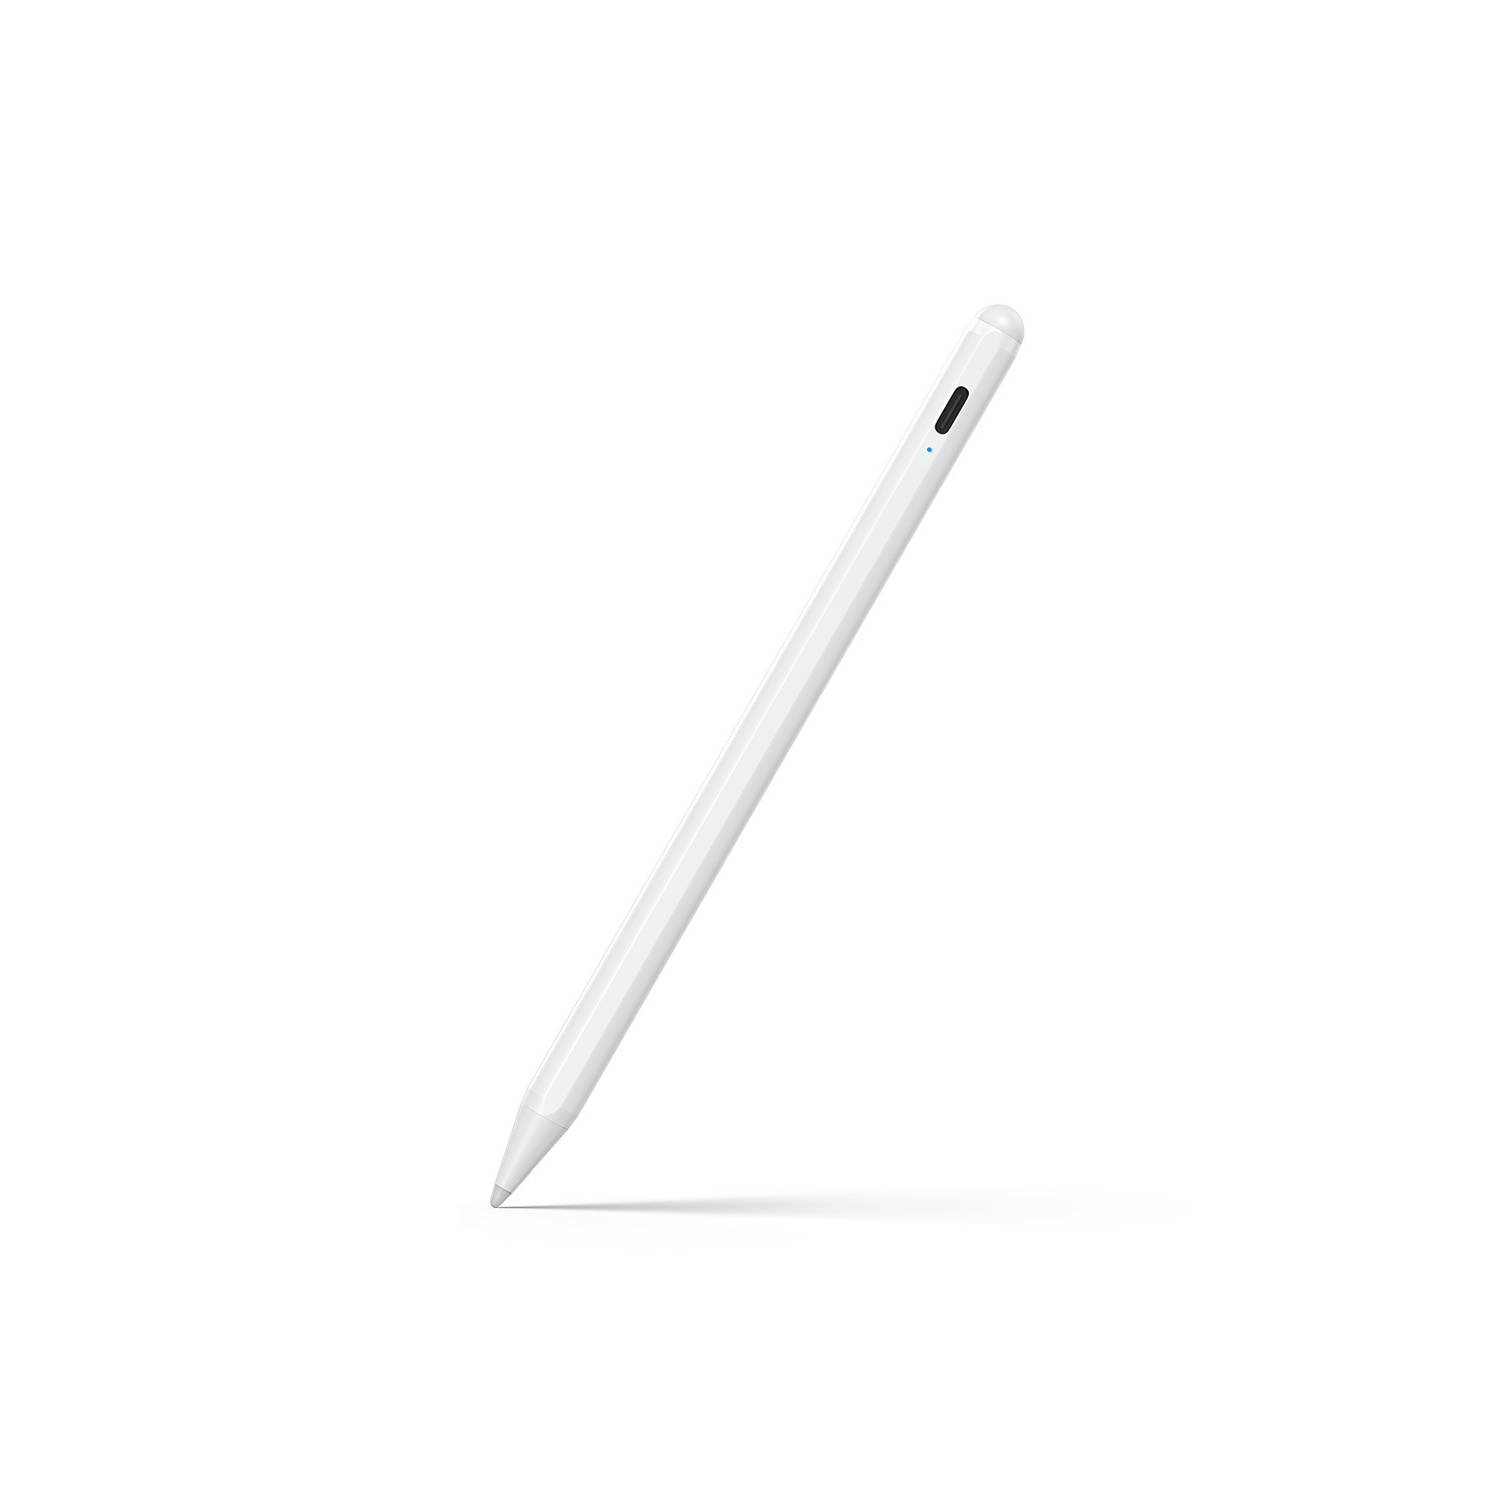 GENERICO Pencil Lapiz Pen - Samsung Galaxy Tab Ipad Celulares Y Tablet